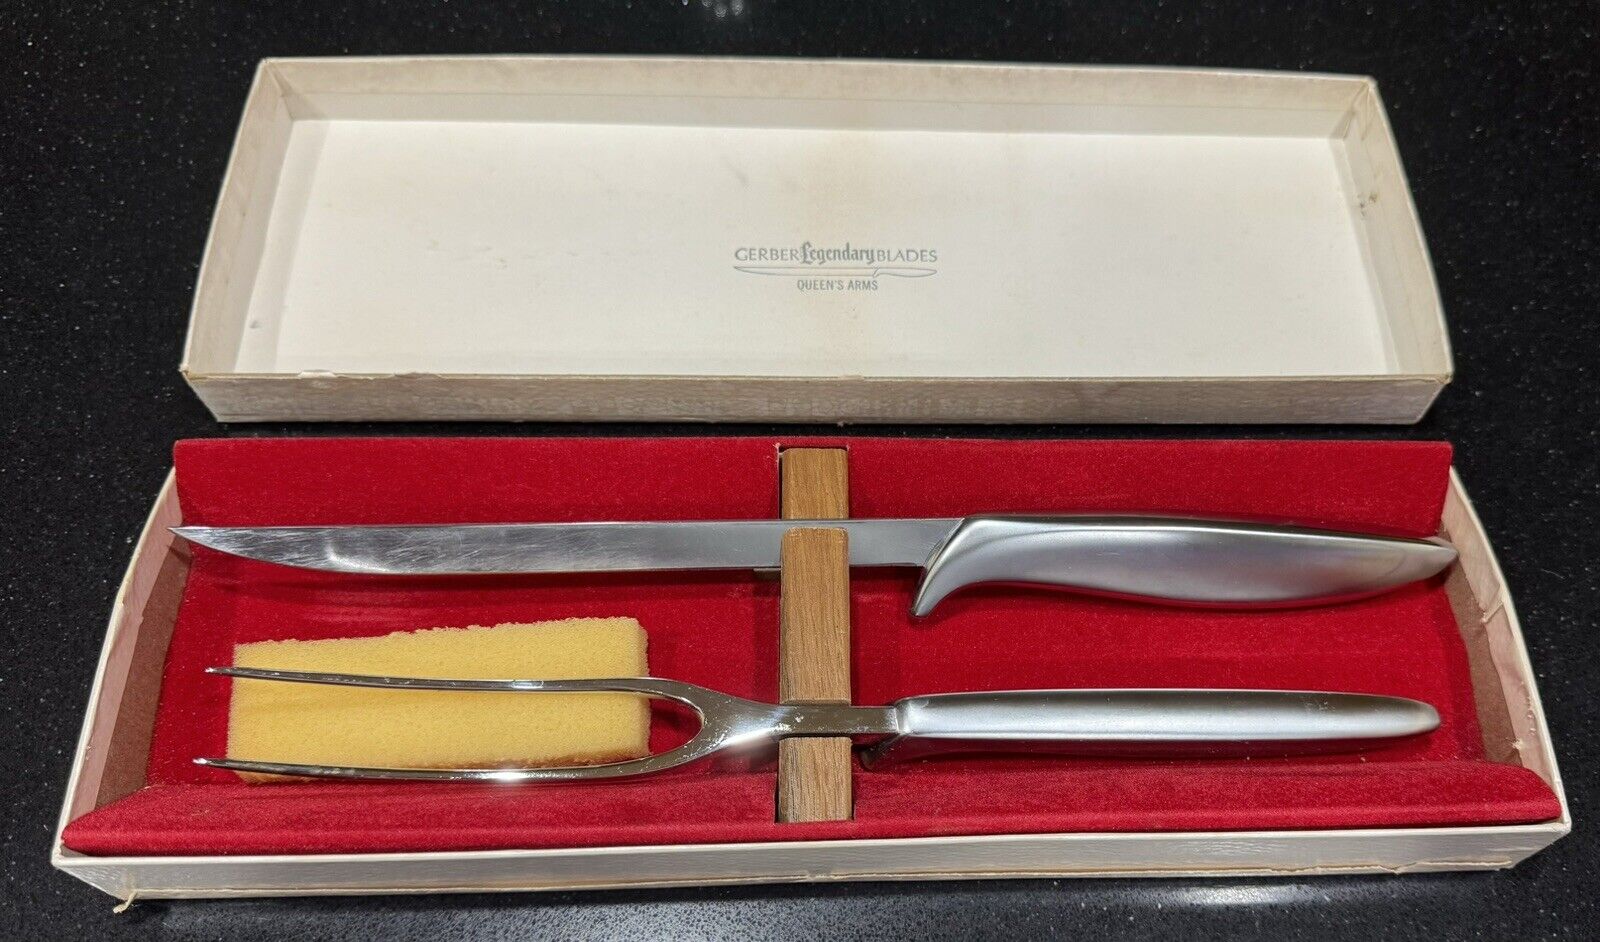 Gerber Knife Fork Vintage Legendary Blades 2 Piece Carving Set Queen’s Arms